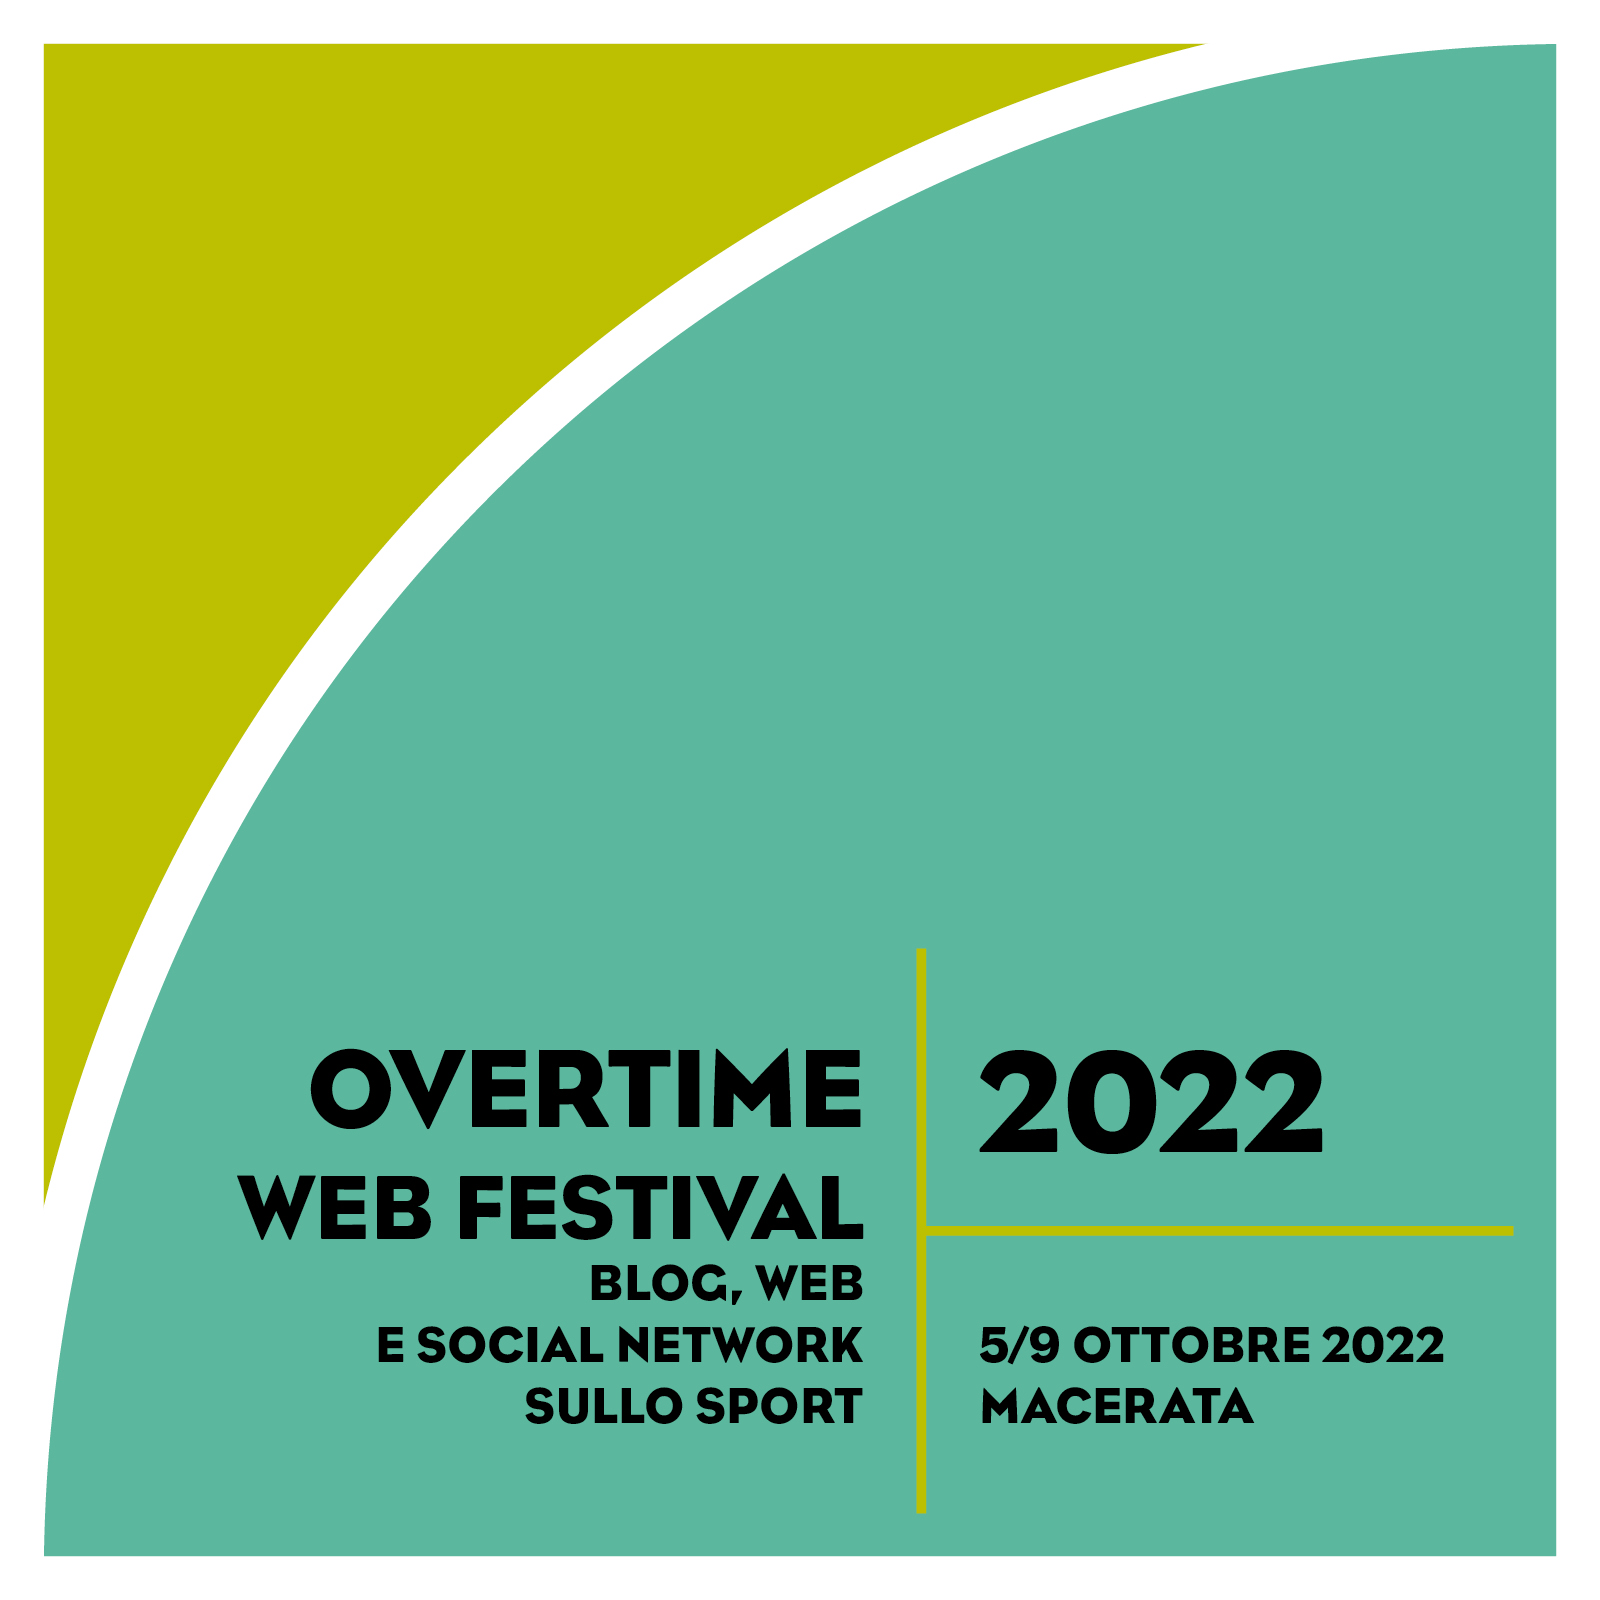 Overtime Web Festival 2022